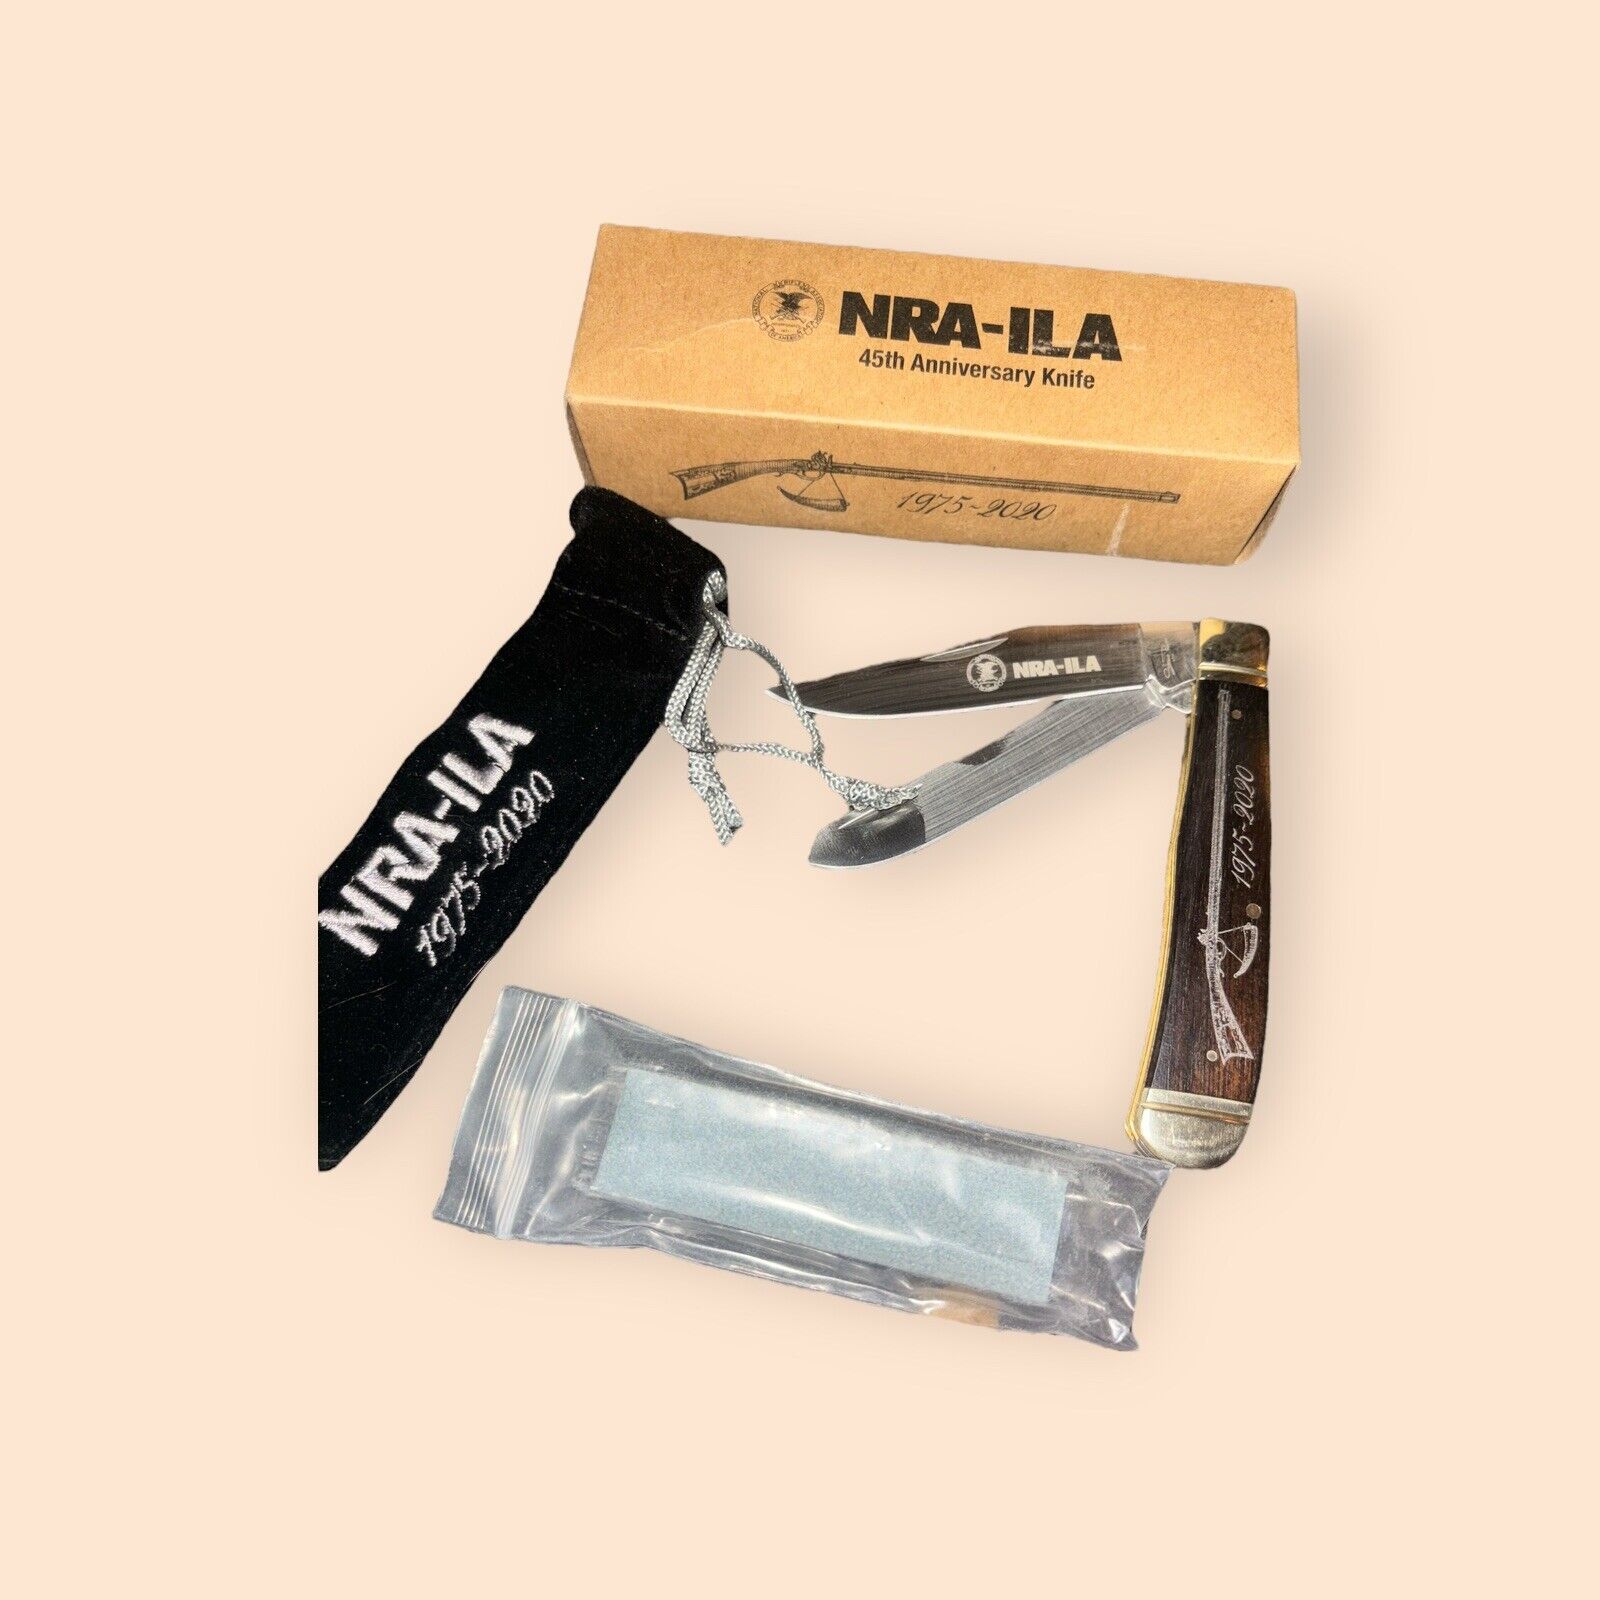 Stone River NRA -ILA 1975-2020 45th Anniversary Trapper Knife Folding in Box